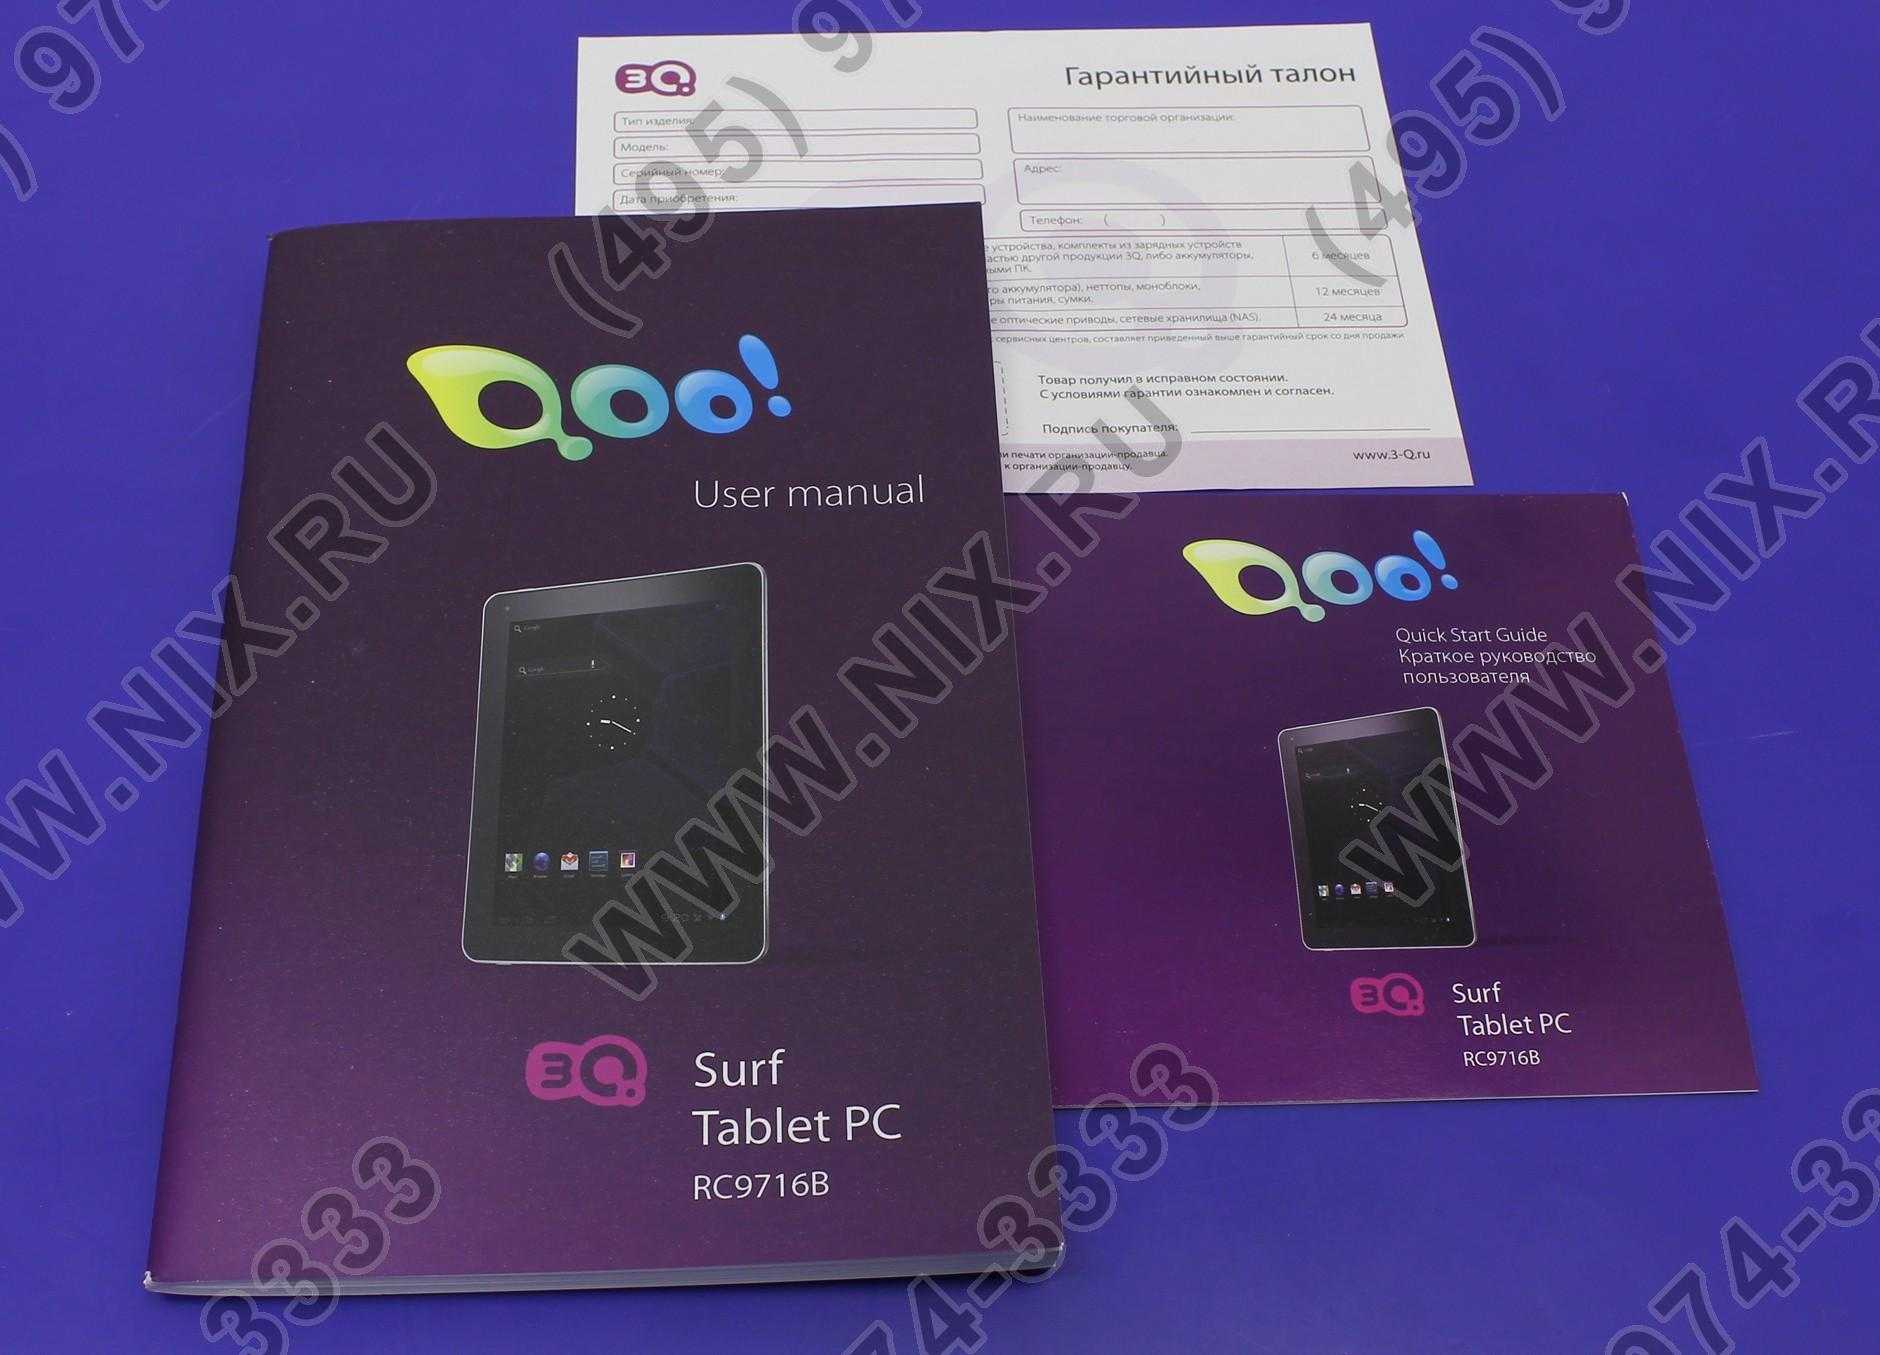 Замена экрана планшета 3q surf ts1003t 8 гб wifi черный — купить, цена и характеристики, отзывы